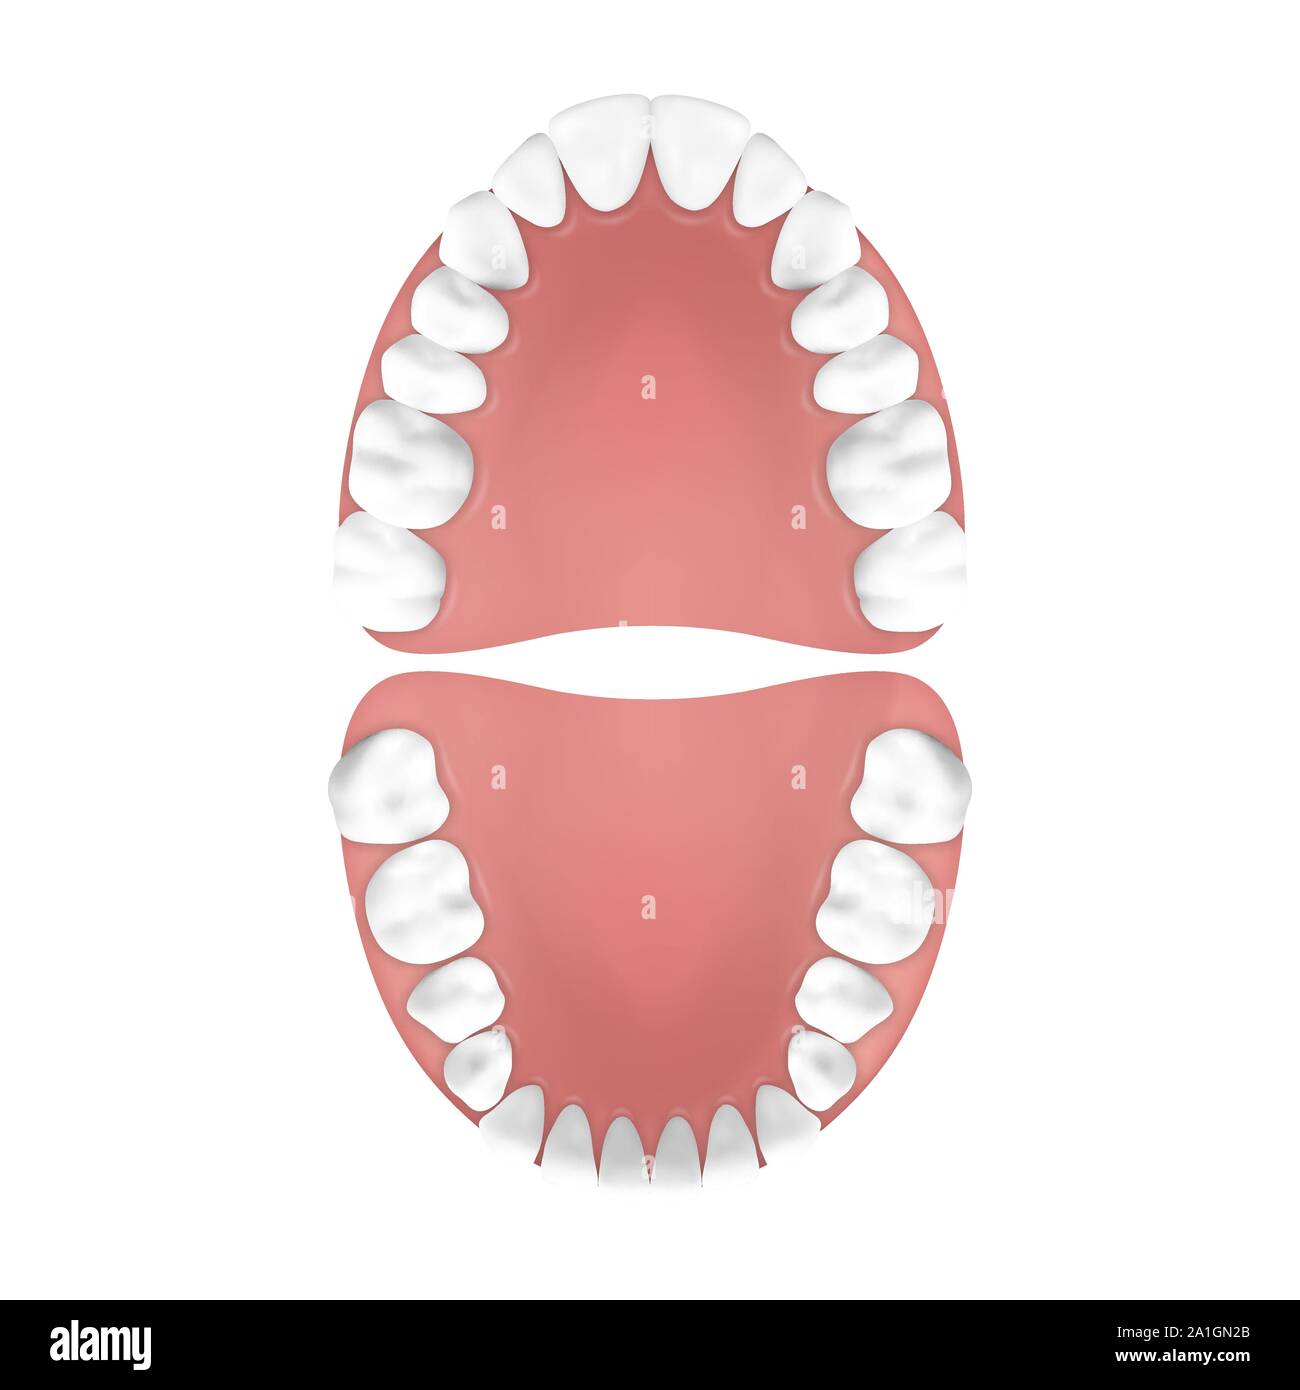 3D réaliste de vecteur, les dents de la mâchoire supérieure et inférieure, adultes Vue d'en haut. Concept d'anatomie. Orthodontiste dents humaines. Medical santé buccale. Modèle de conception Illustration de Vecteur